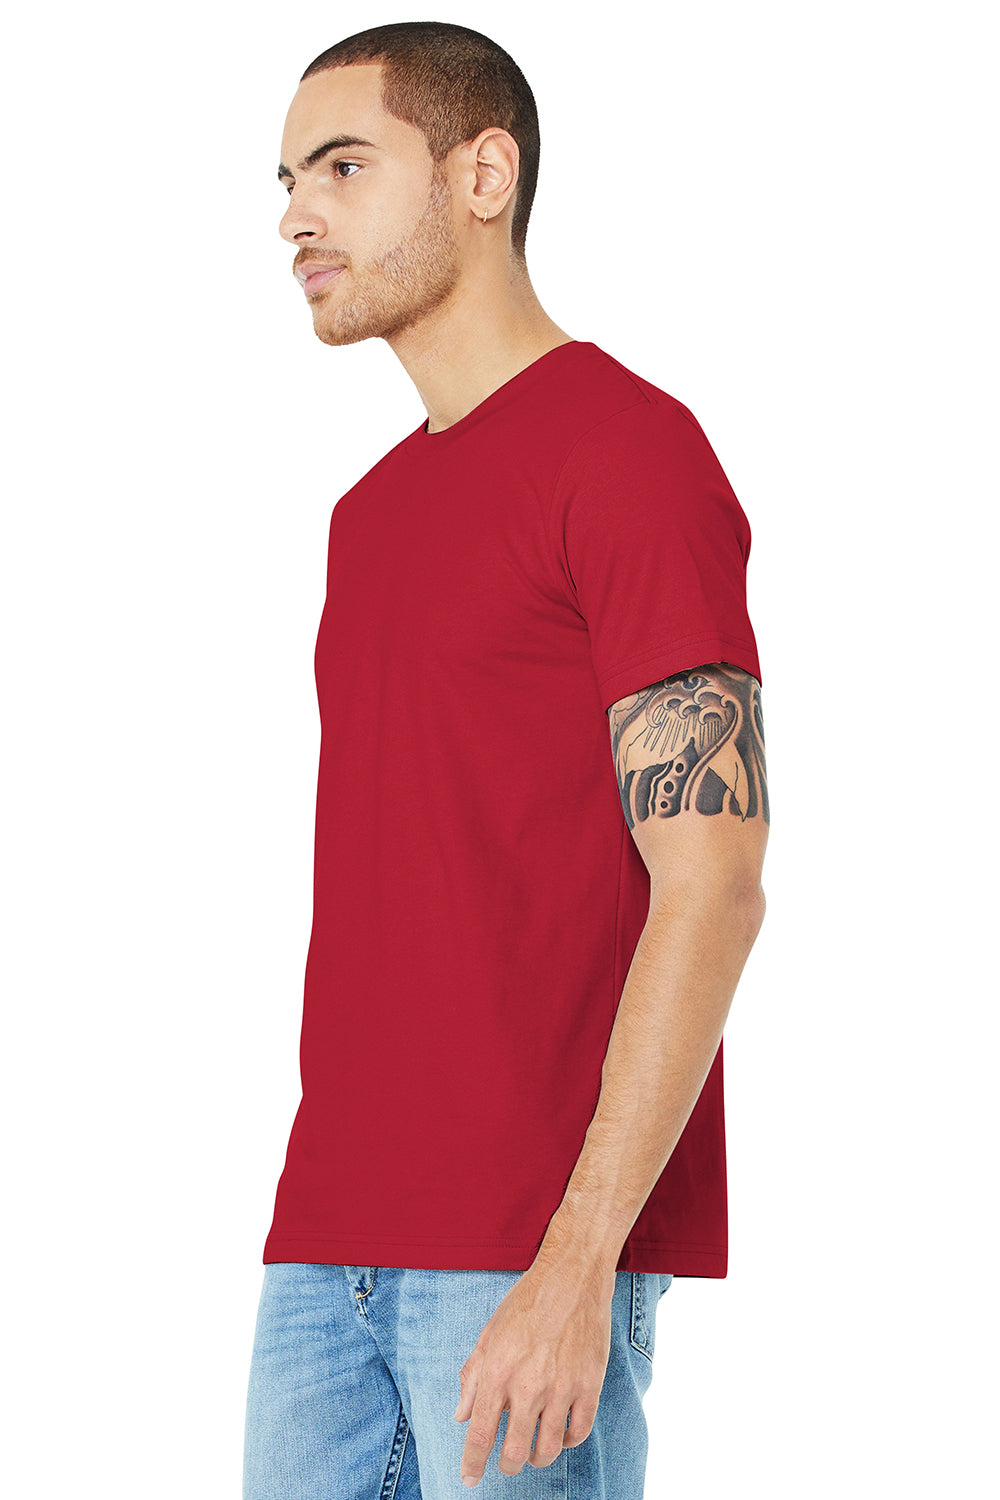 Bella + Canvas BC3001/3001C Mens Jersey Short Sleeve Crewneck T-Shirt Canvas Red Model 3Q